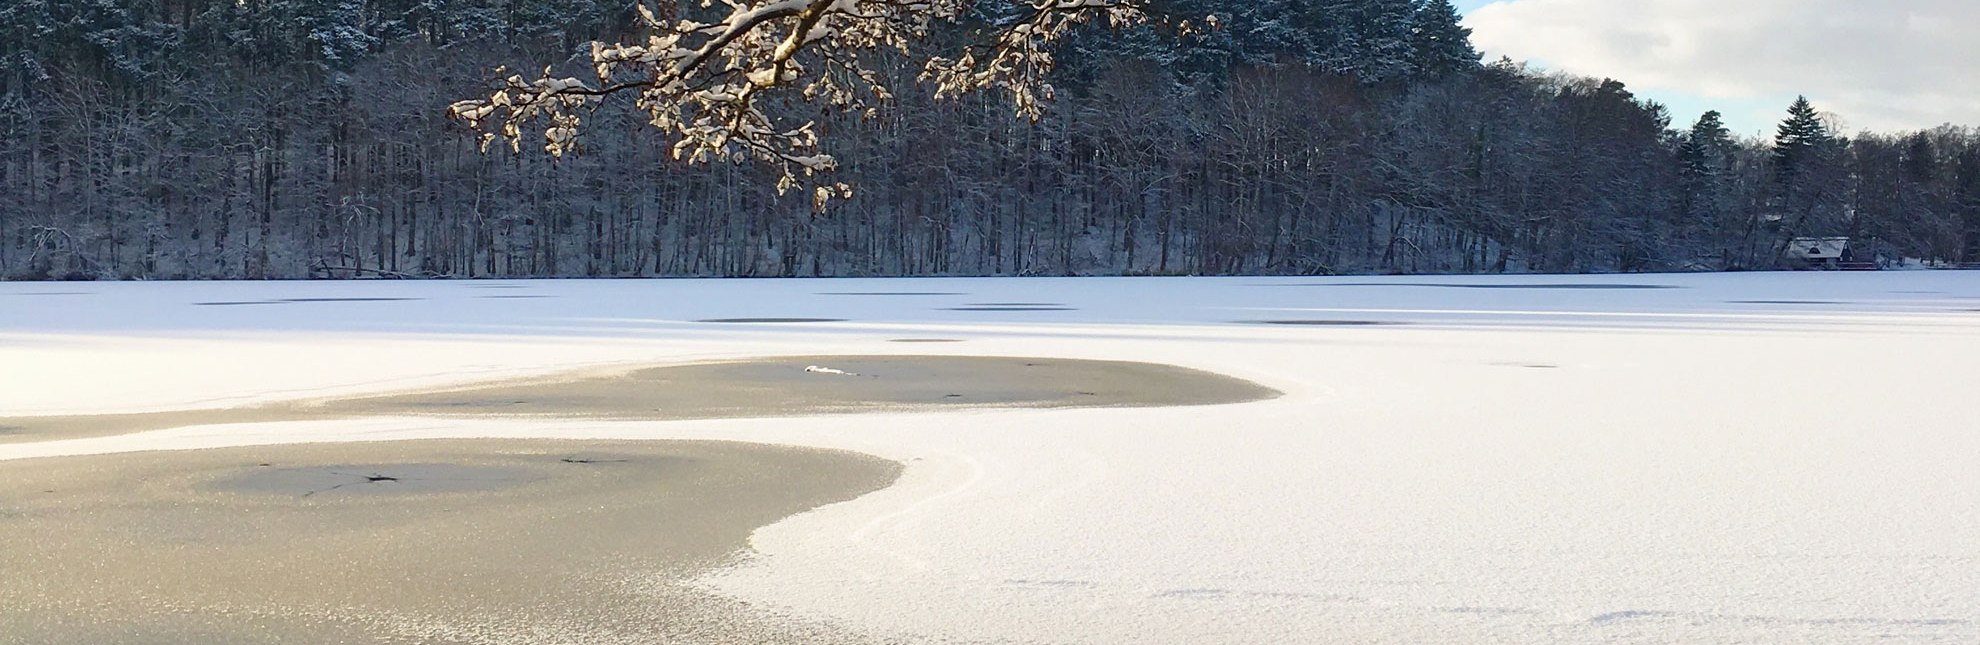 Salemer See im Winter, © Carina JAhnke / HLMS GmbH